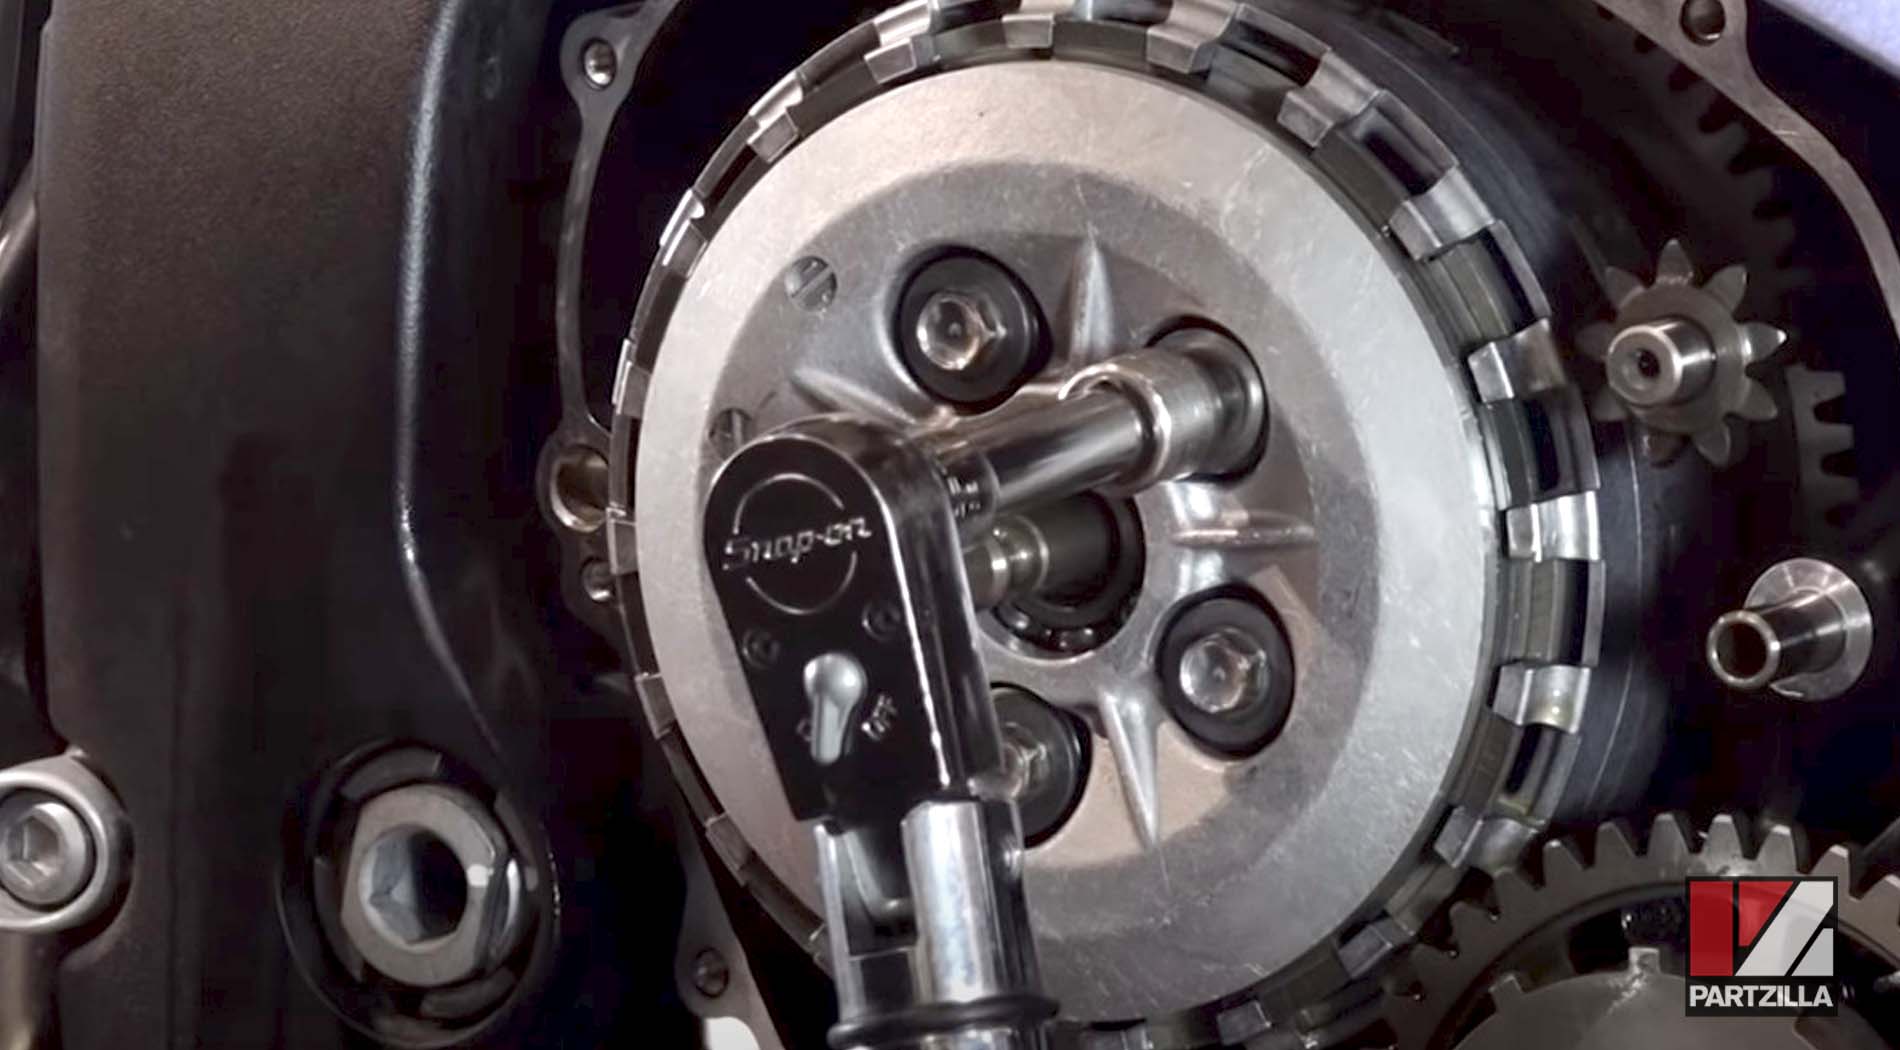 Honda CBR600 motorcycle clutch rebuild springs installation